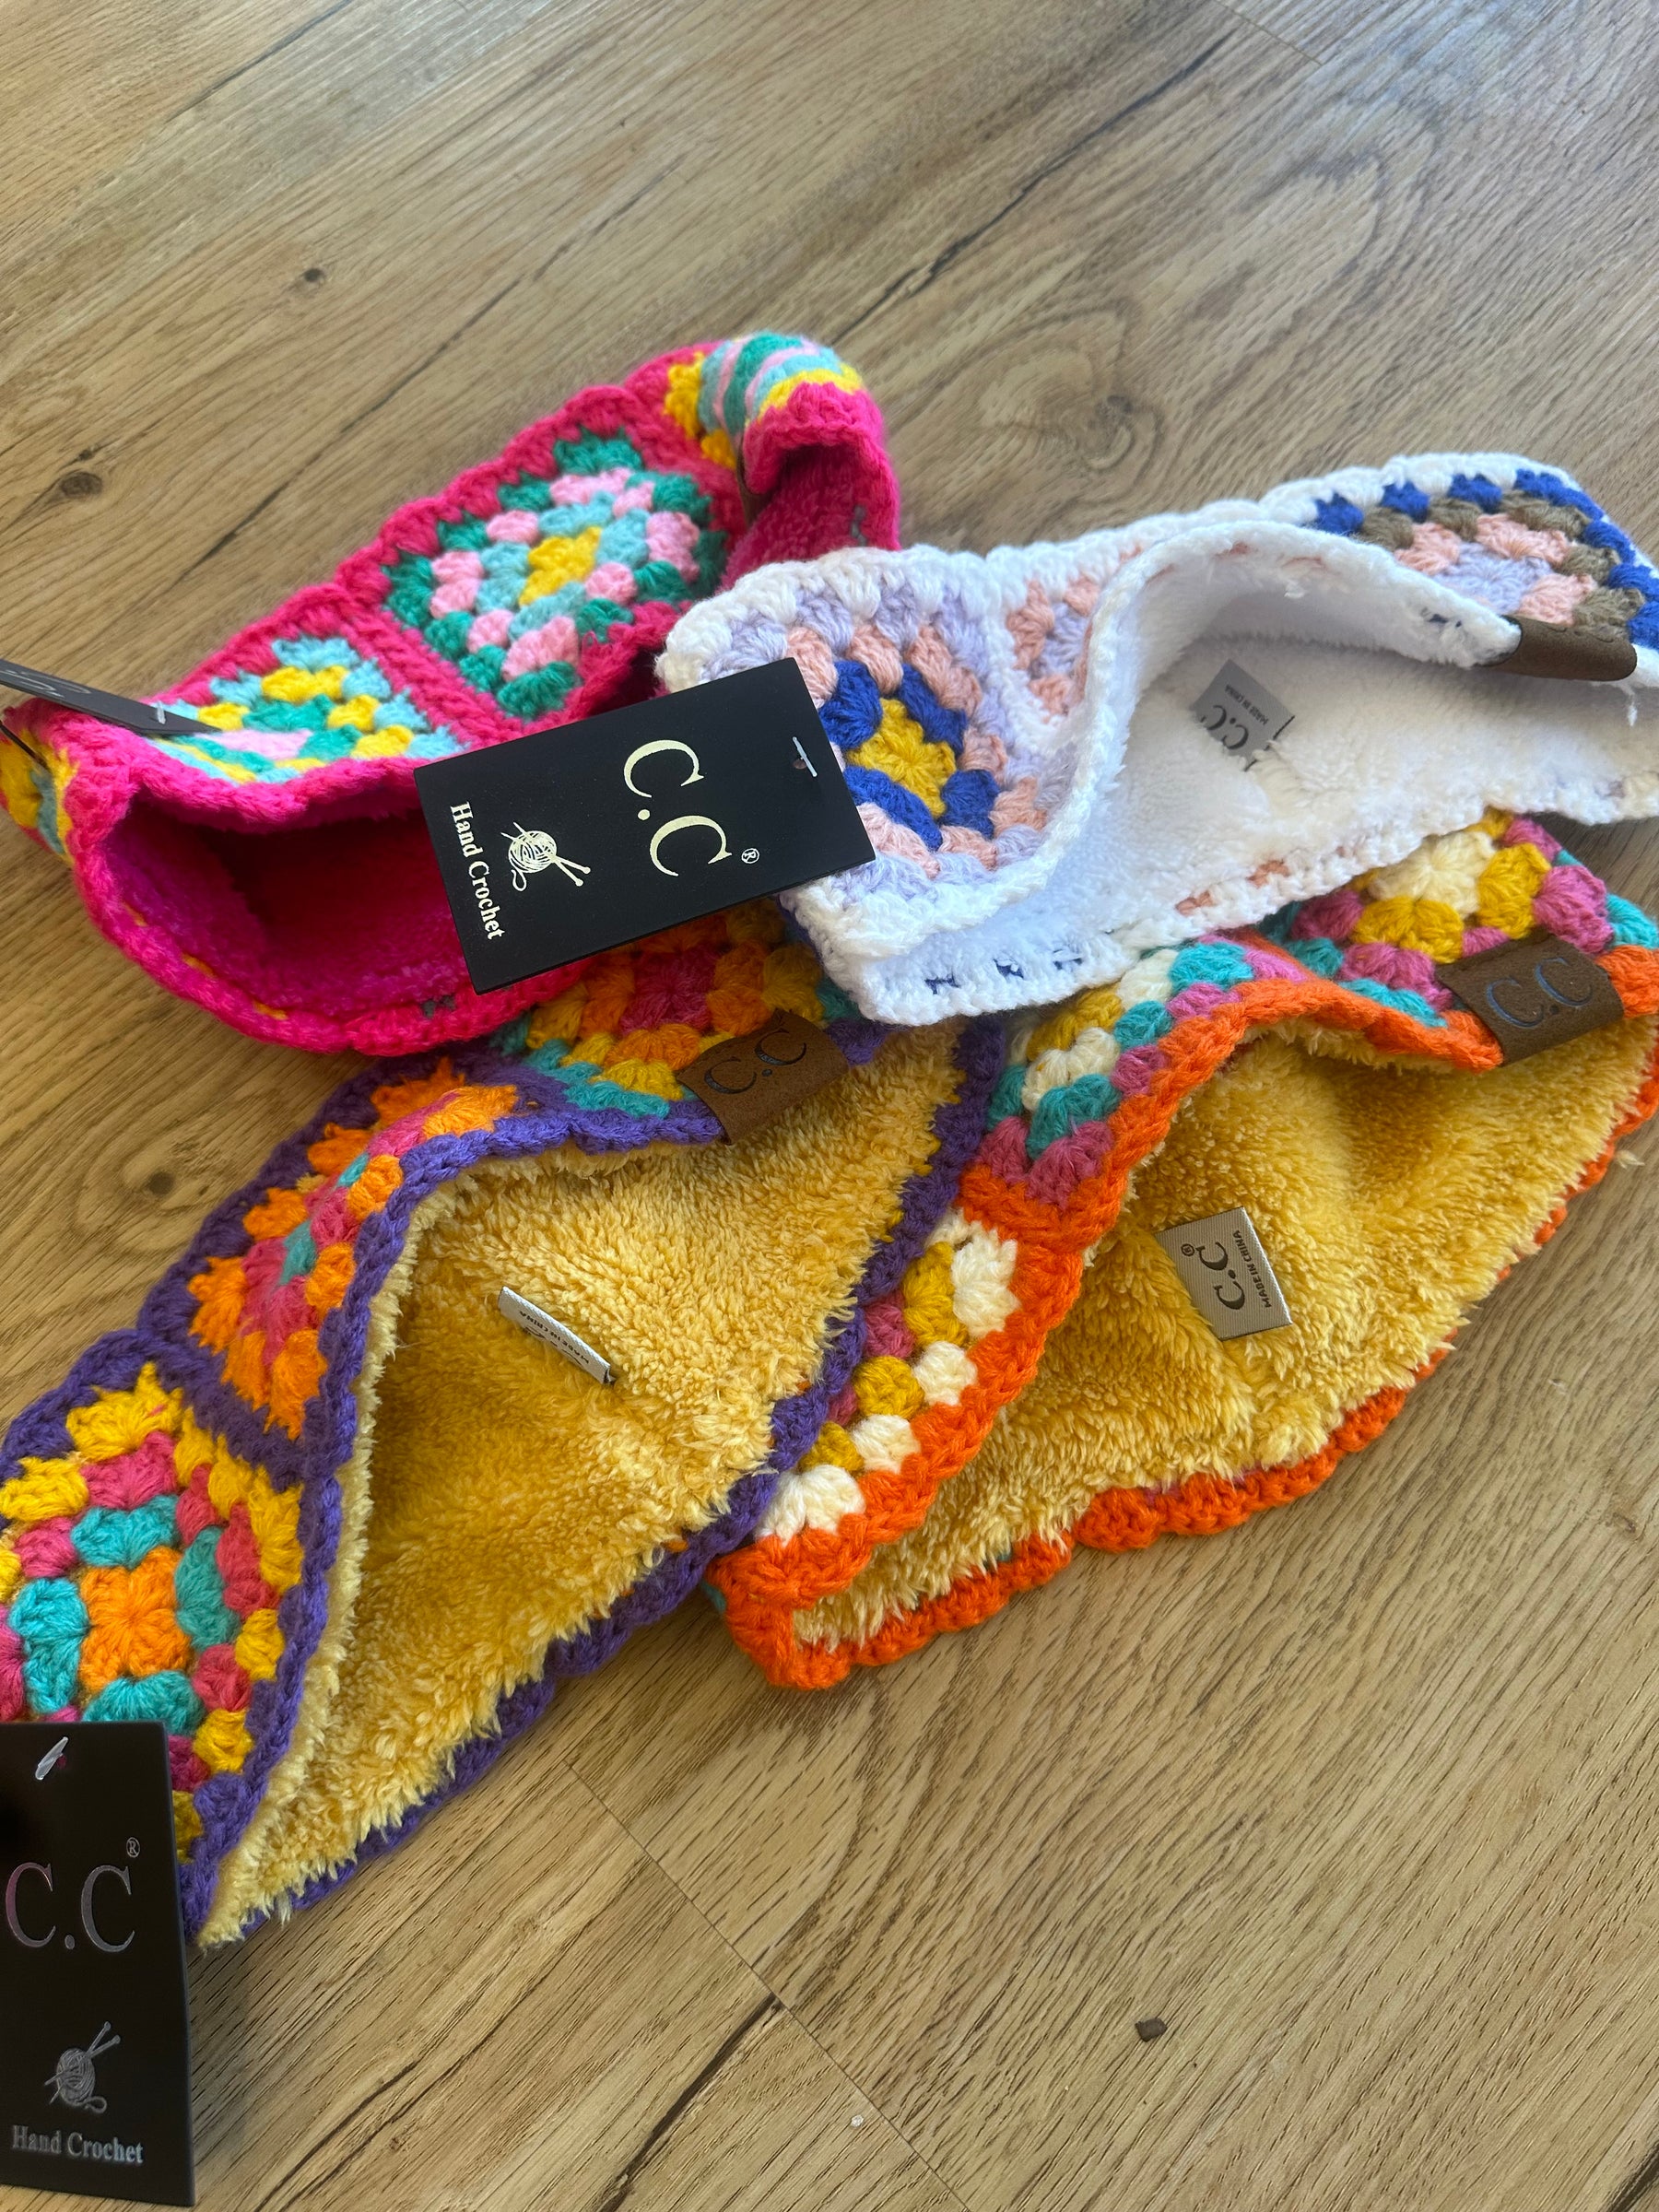 Crochet Headwrap